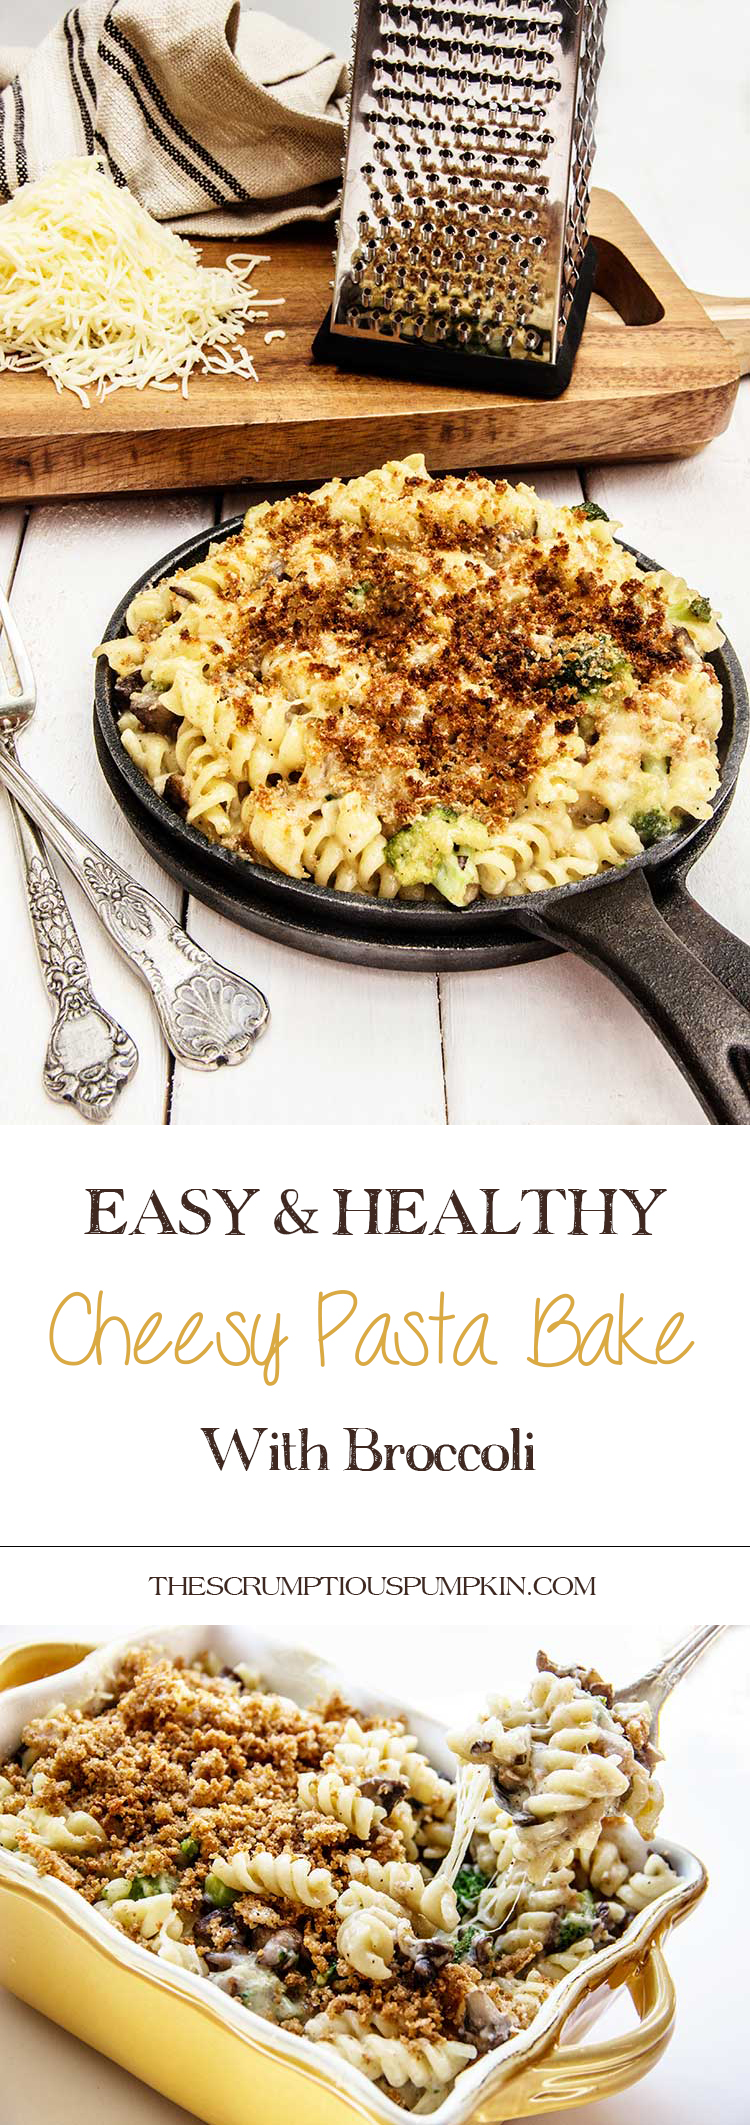 easy-healthy-cheesy-pasta-bake-with-broccoli